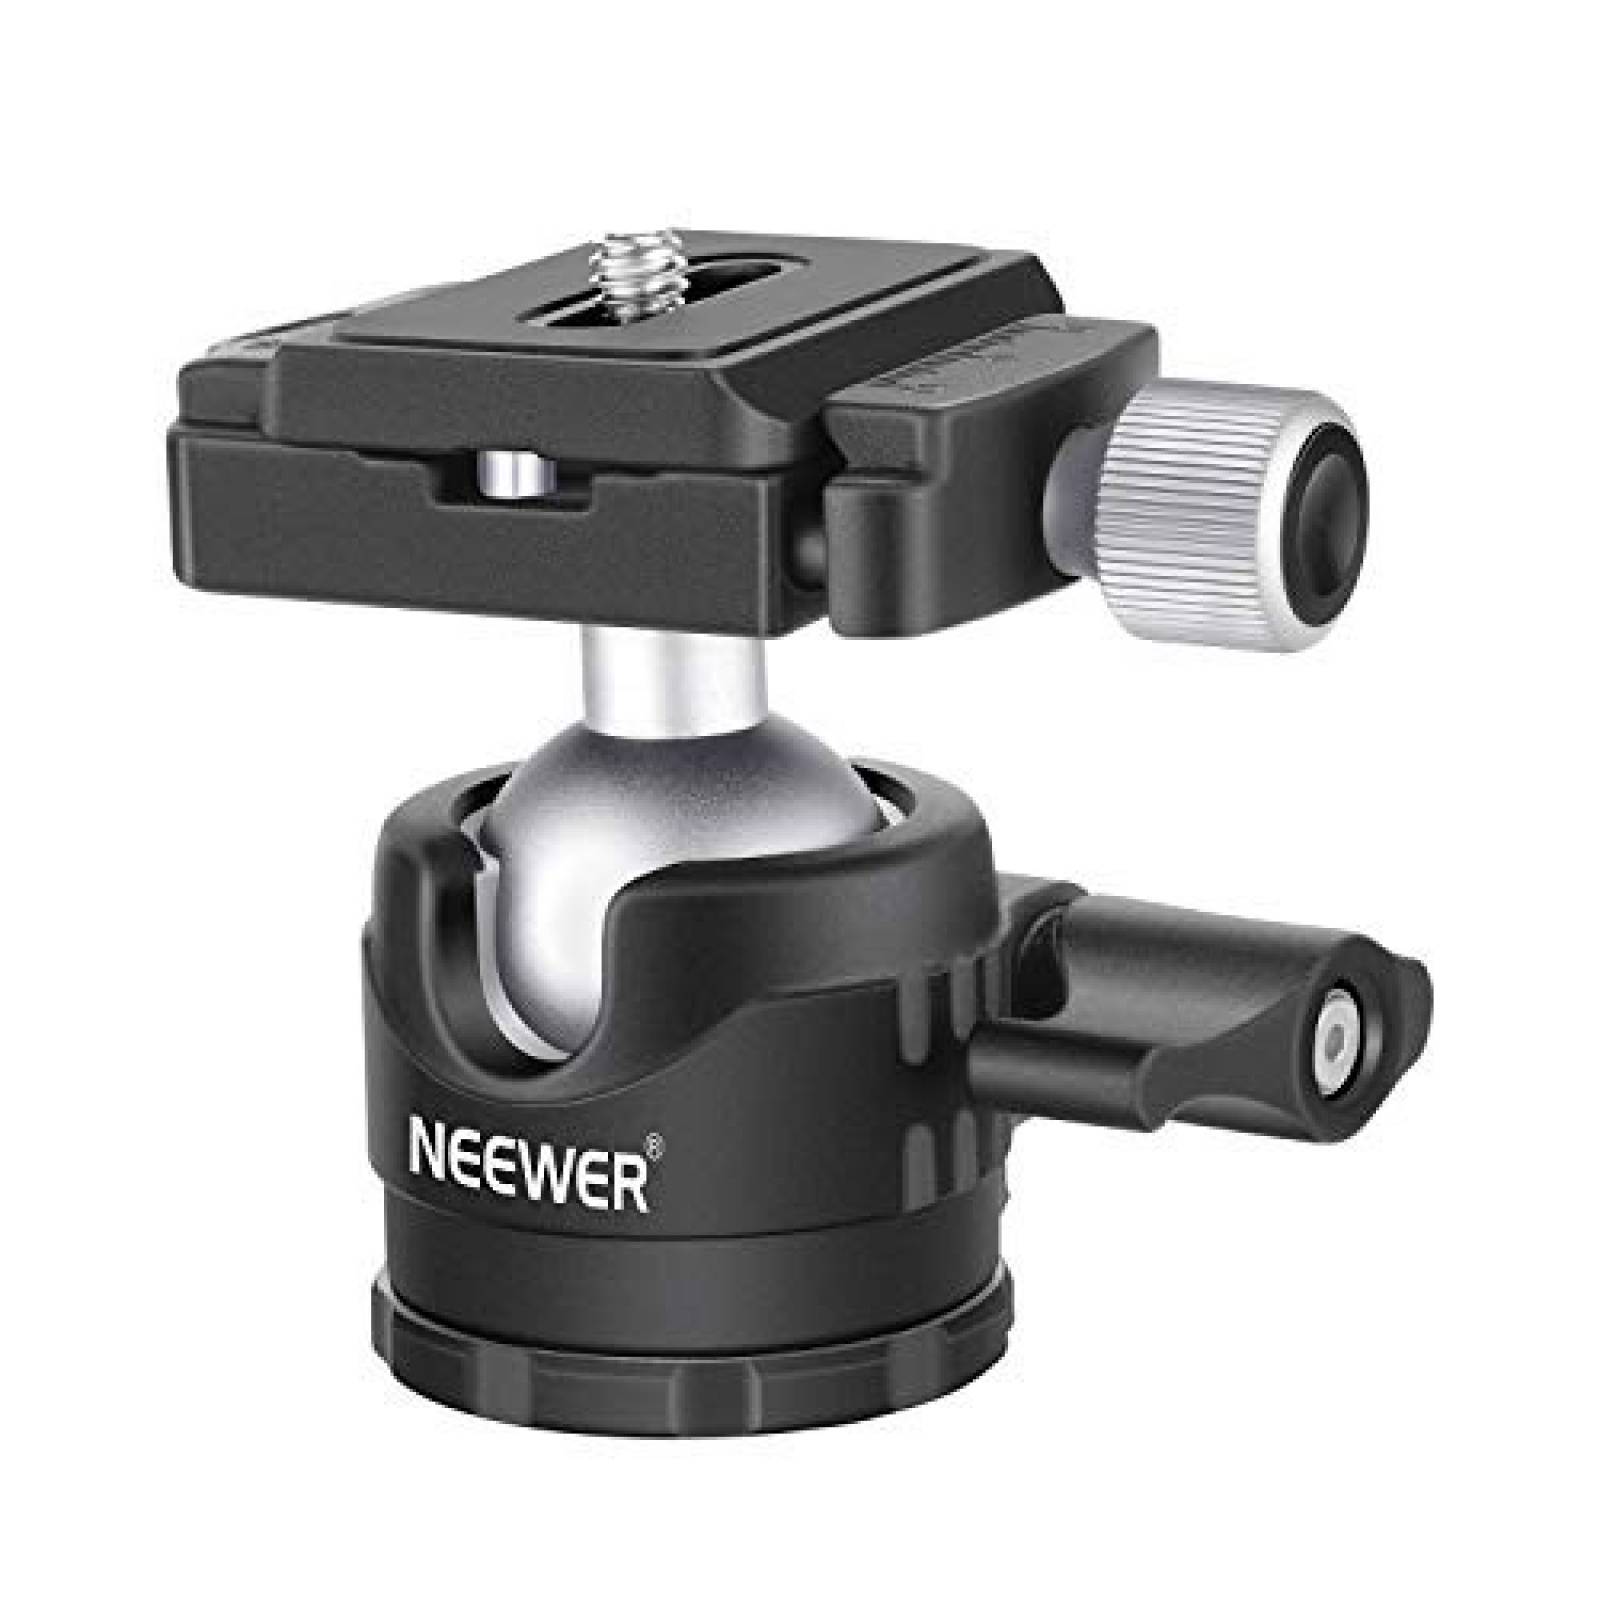 Cabeza trípode Neewer para cámaras y smartphones 360 grados